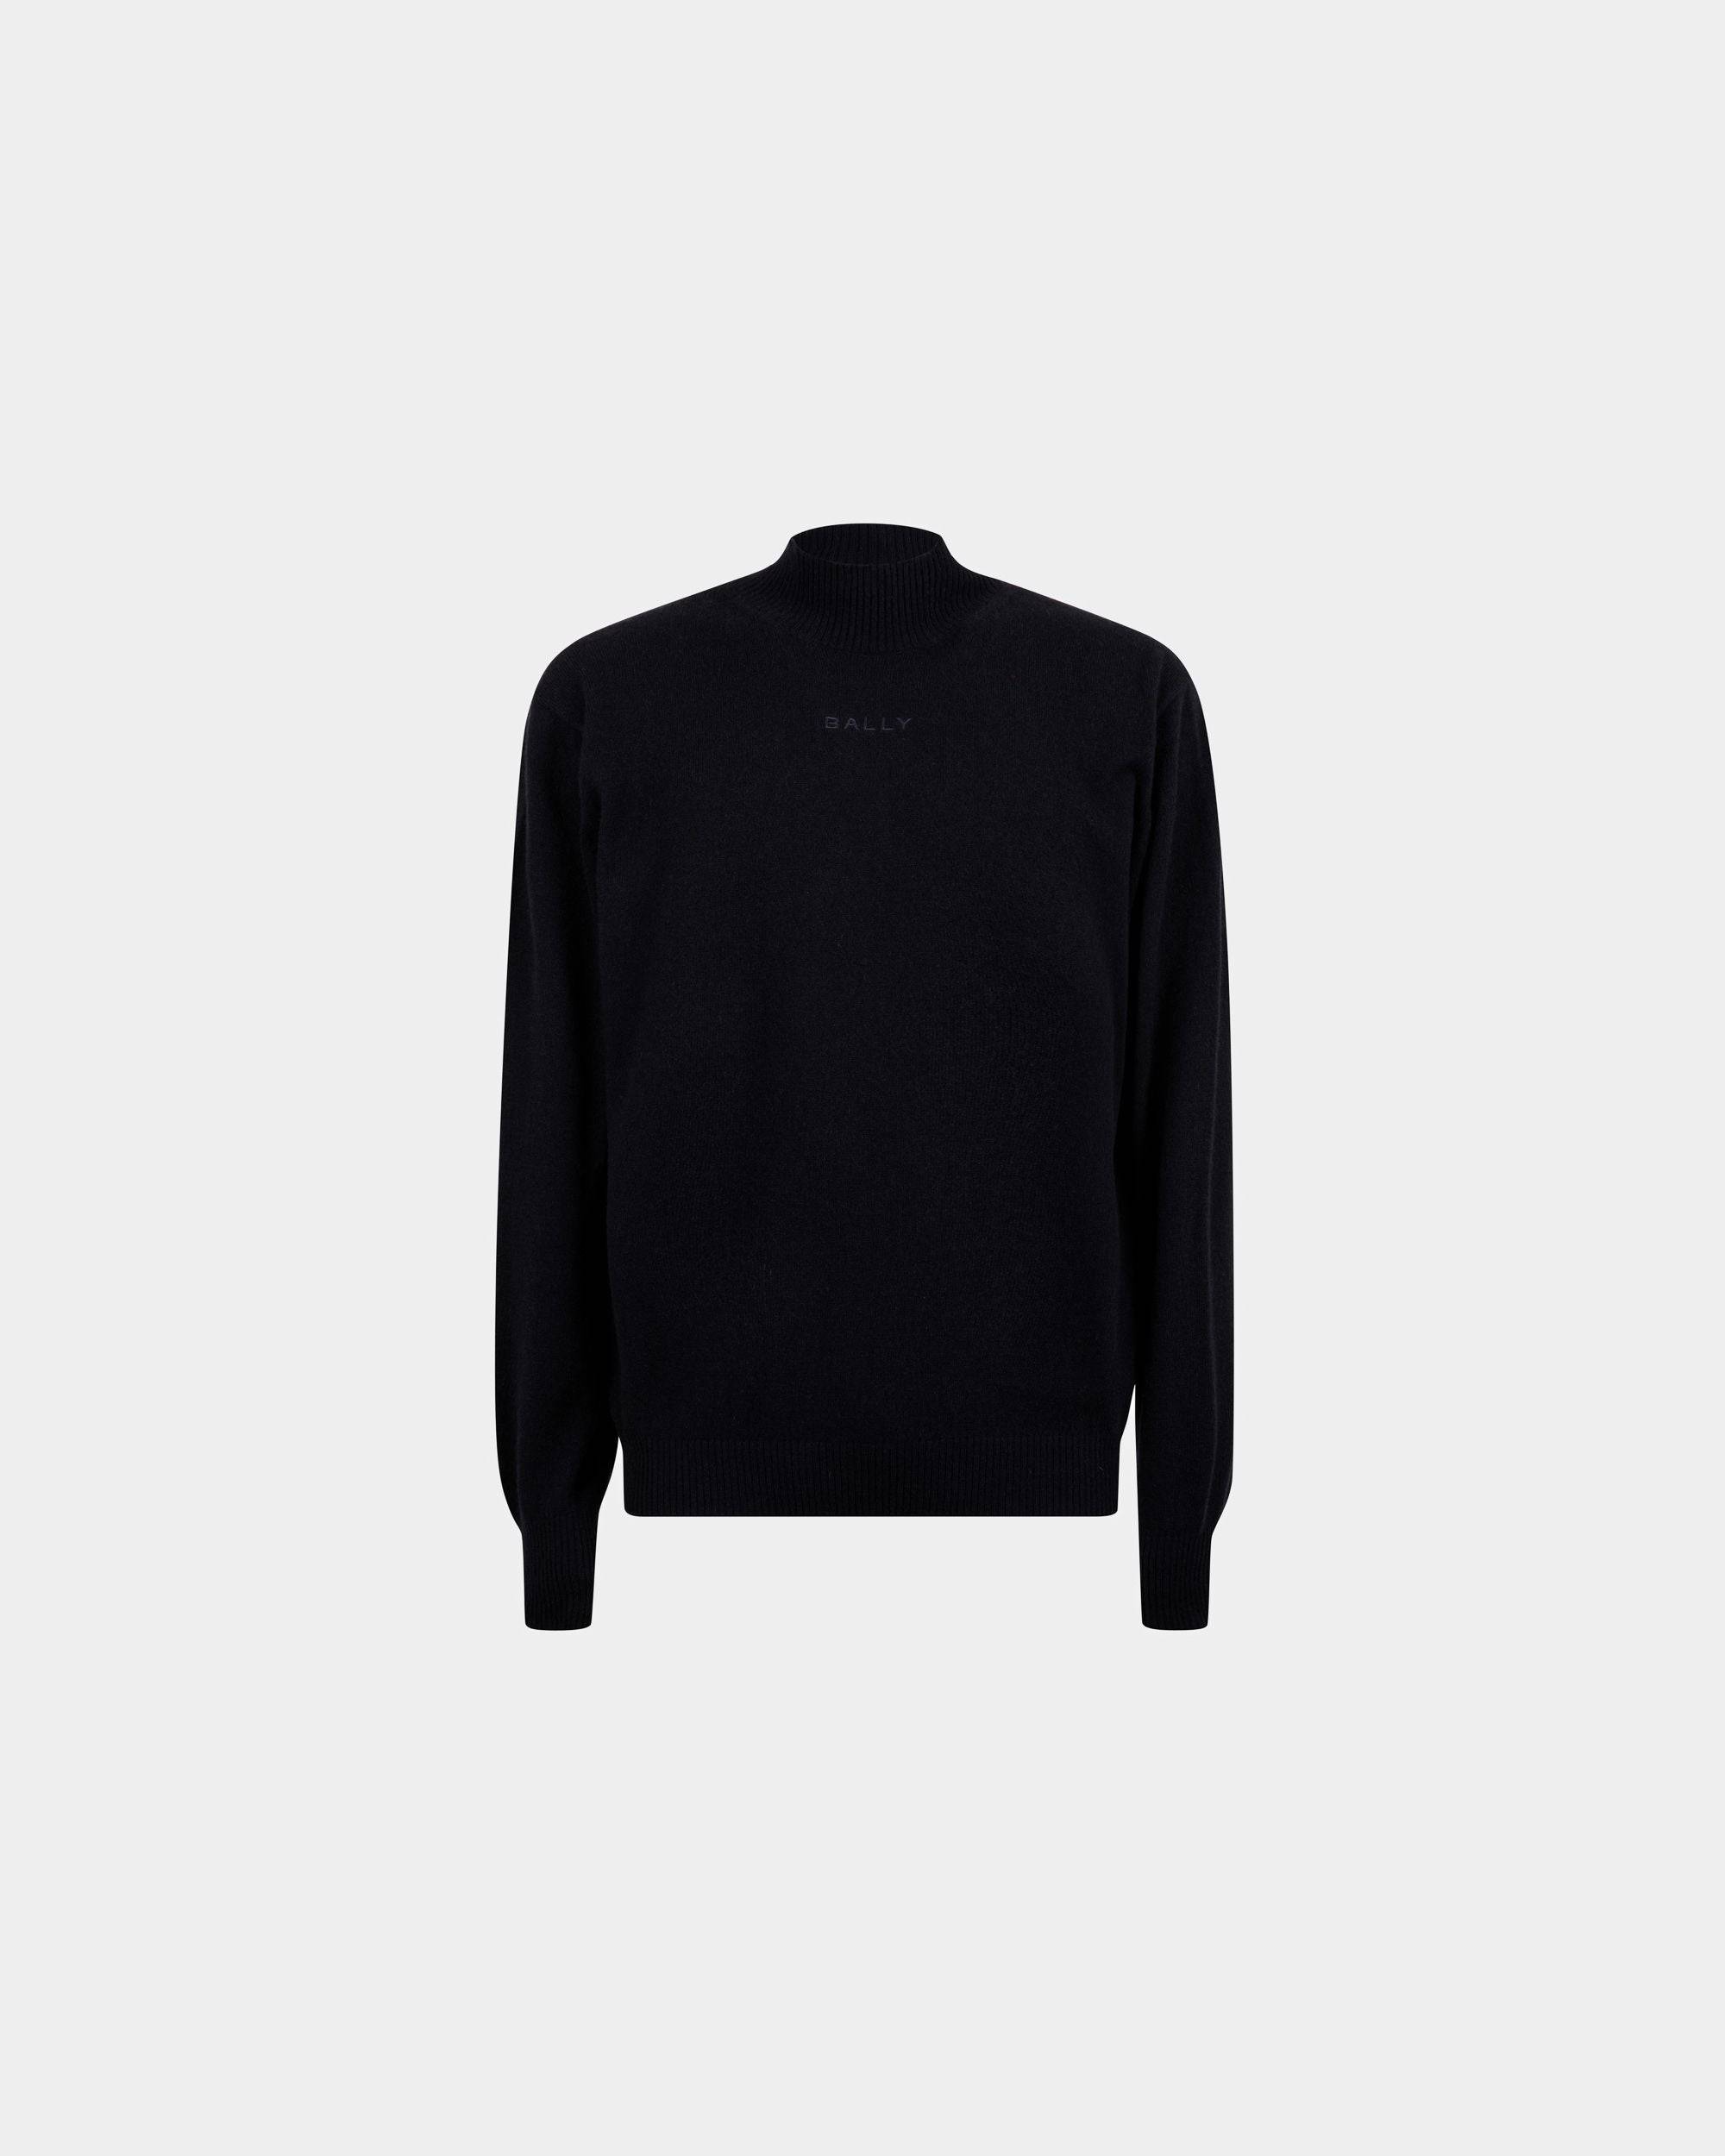 Men's Turtleneck Sweater In Dark Blue Cashmere | Bally | Still Life Front